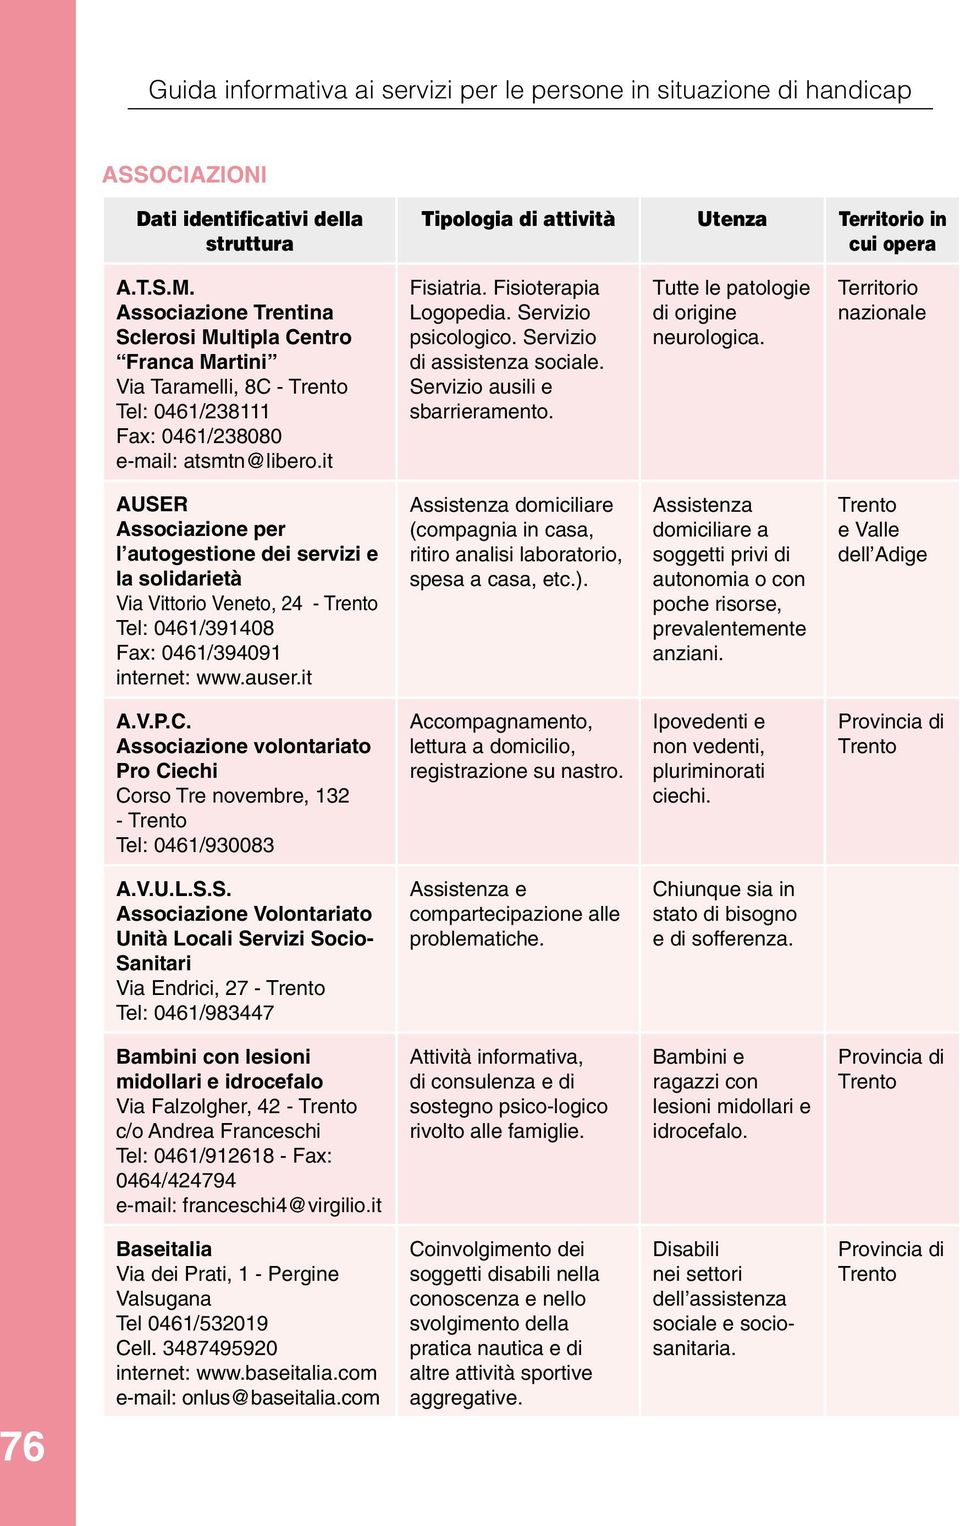 Territorio nazionale AUSER Associazione per l autogestione dei servizi e la solidarietà Via Vittorio Veneto, 24 - Tel: 0461/391408 Fax: 0461/394091 internet: www.auser.